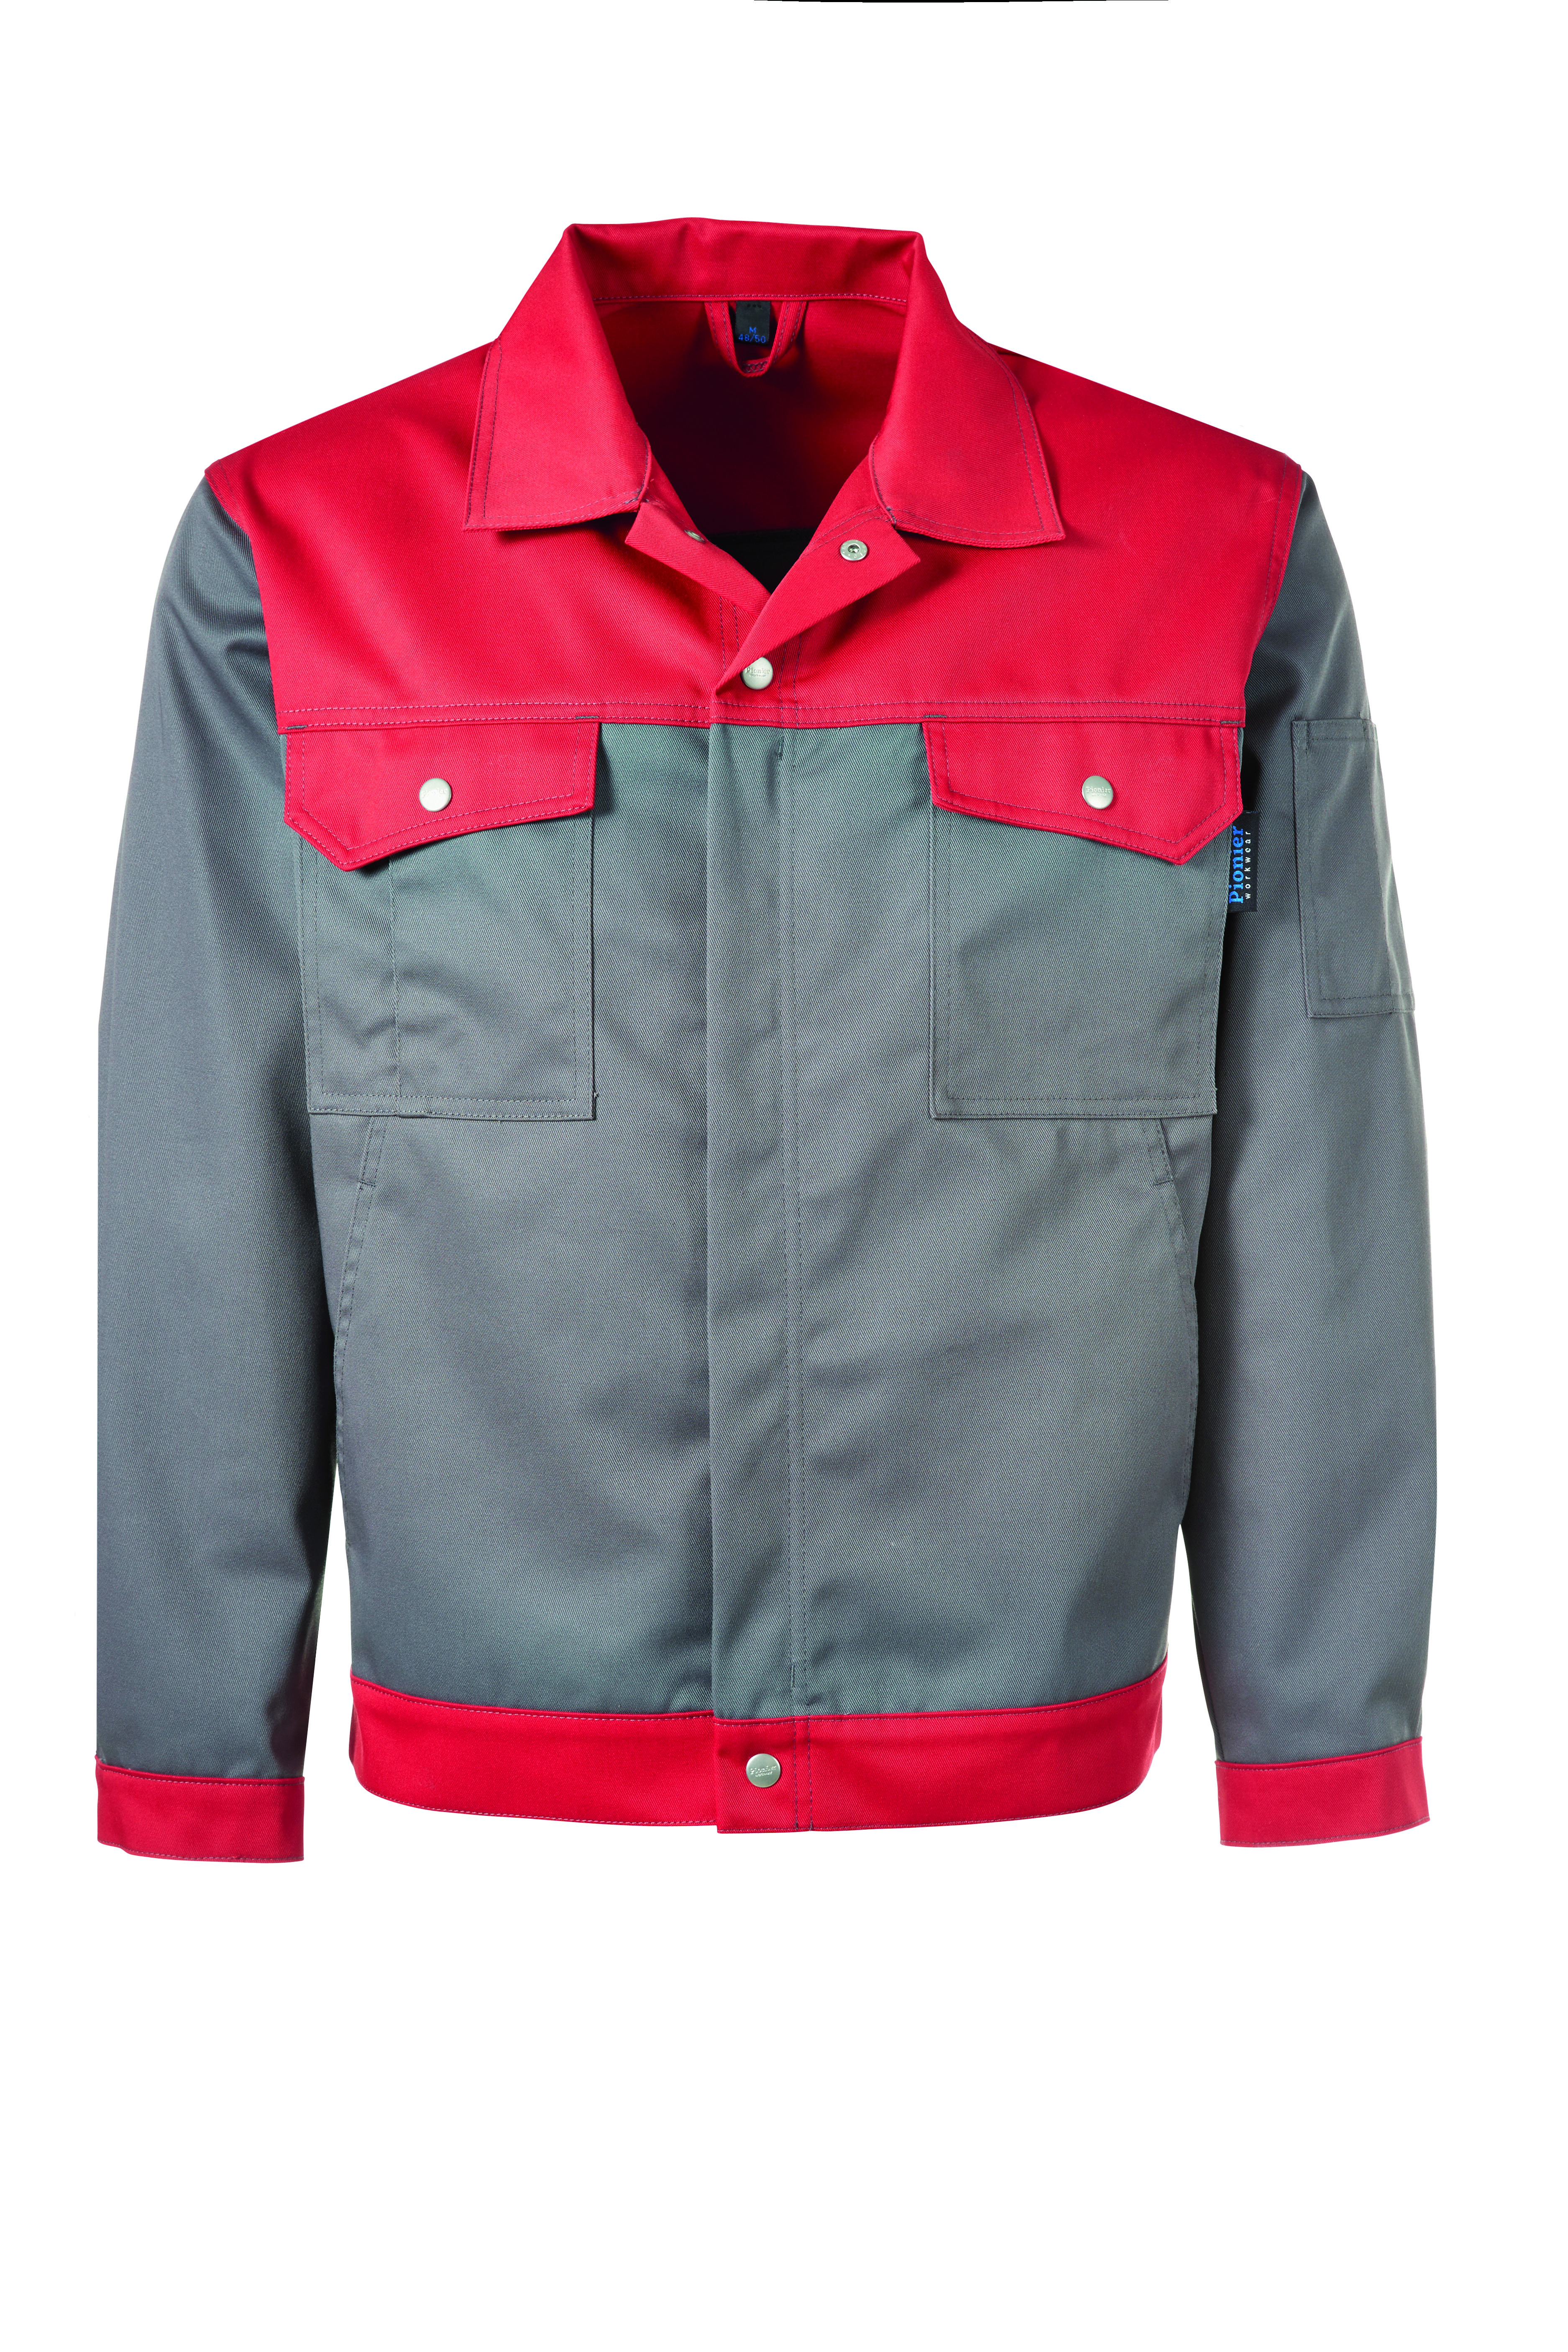 PIONIER Bundjacke Arbeitsjacke Berufsjacke Schutzjacke Arbeitskleidung Berufskleidung grau rot